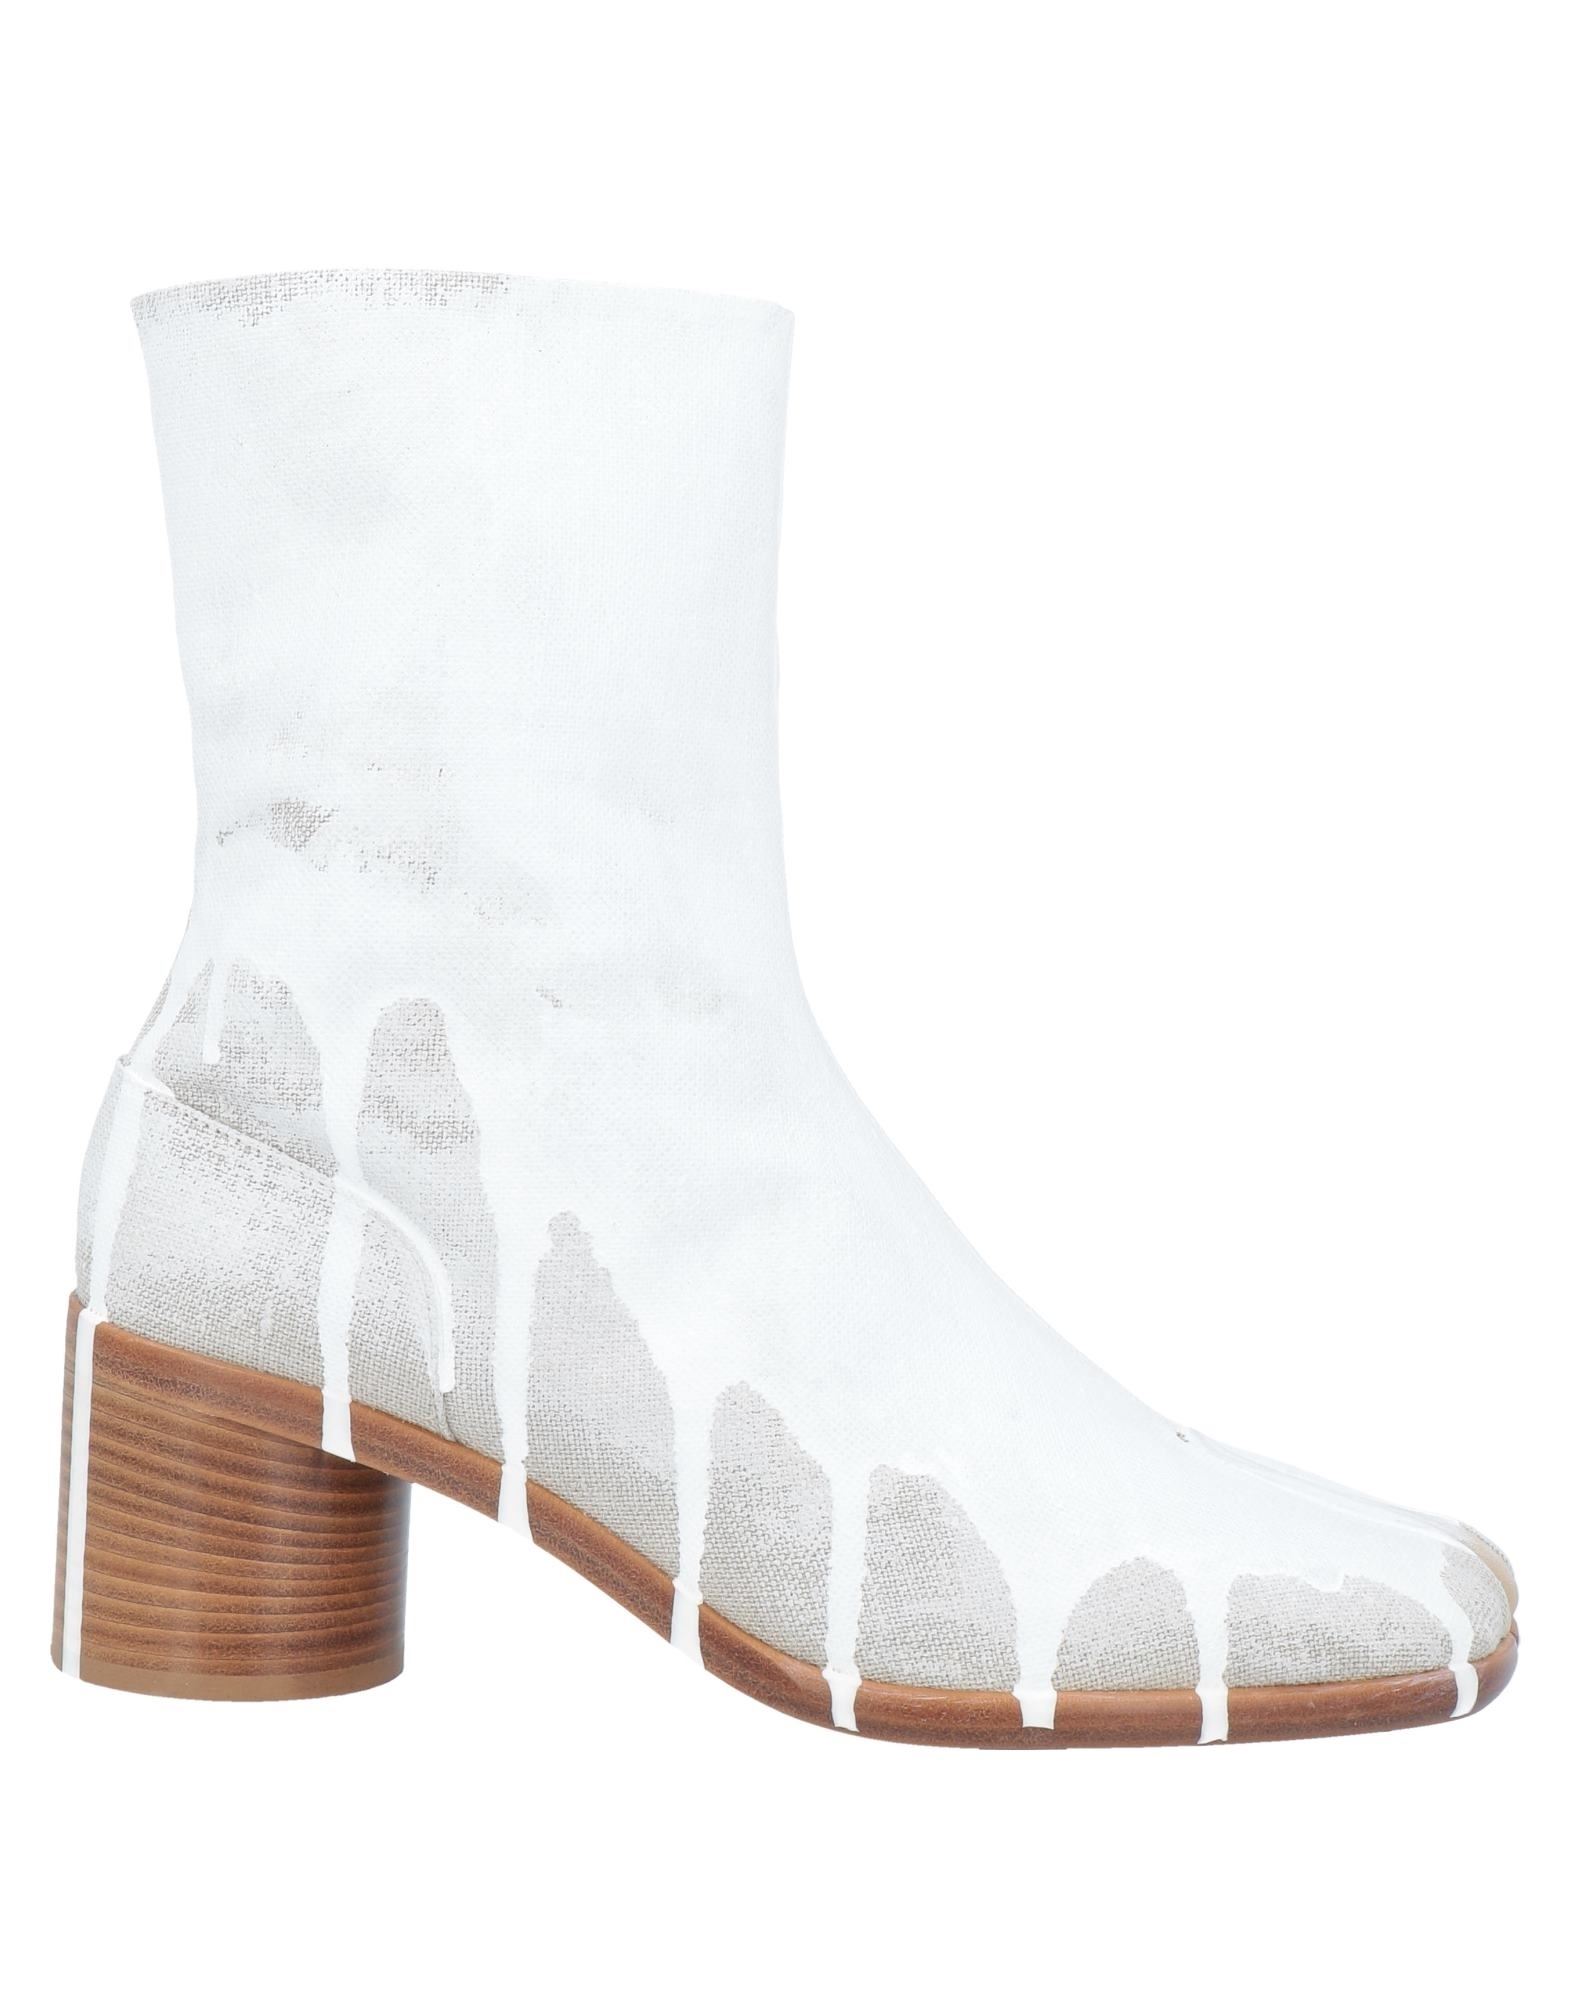 Shop Maison Margiela Man Ankle Boots White Size 8 Textile Fibers